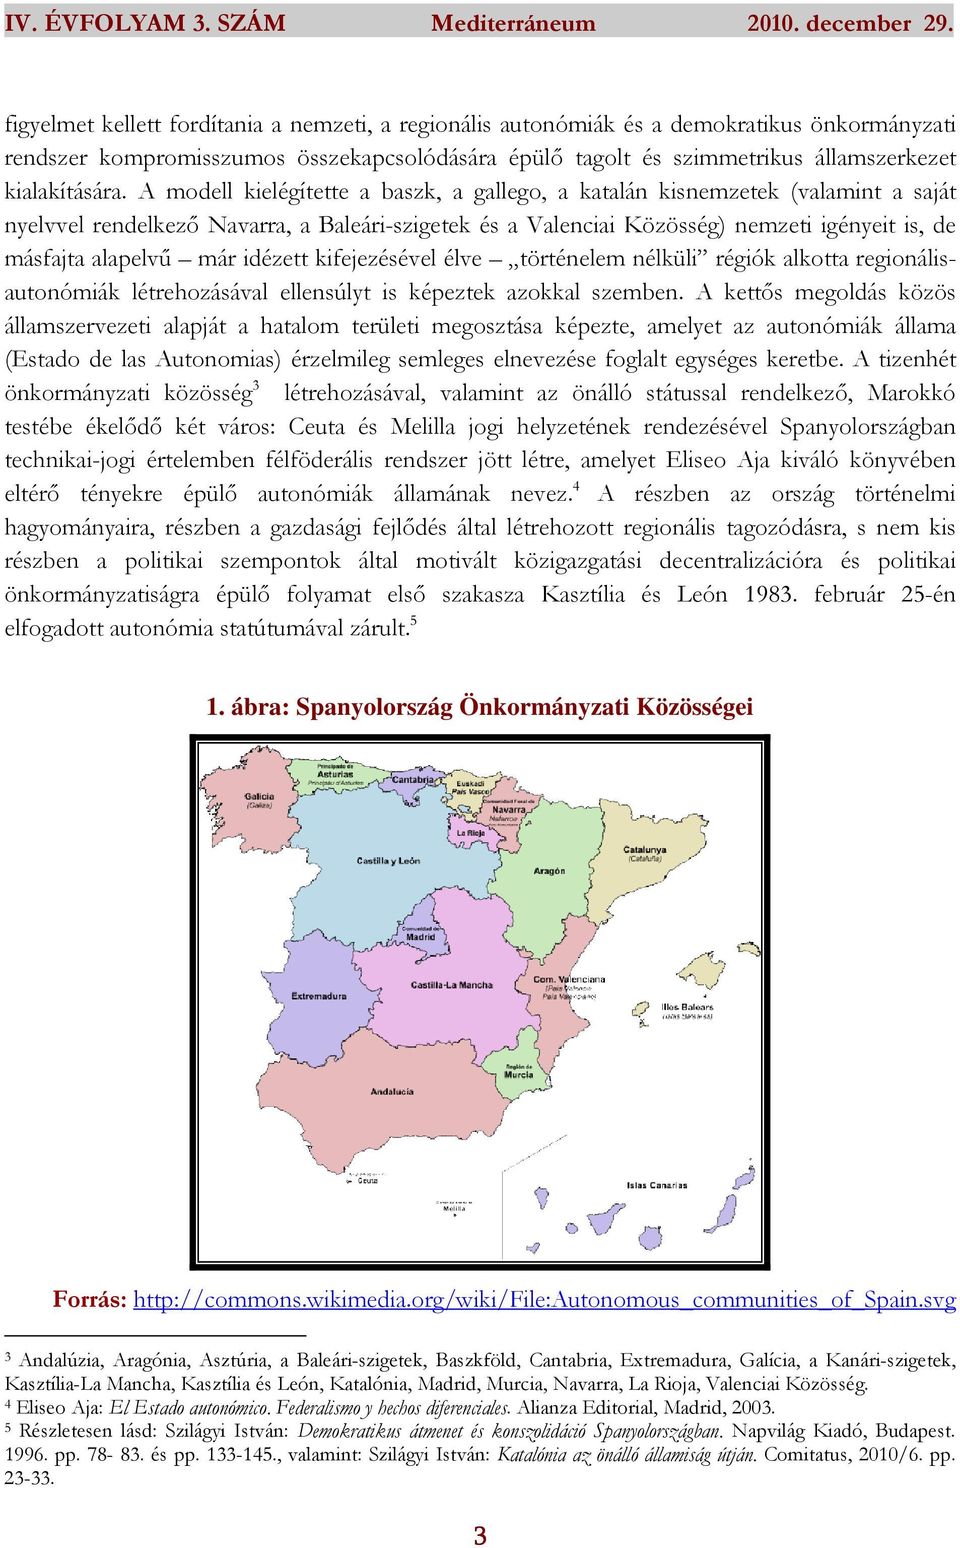 A modell kielégítette a baszk, a gallego, a katalán kisnemzetek (valamint a saját nyelvvel rendelkező Navarra, a Baleári-szigetek és a Valenciai Közösség) nemzeti igényeit is, de másfajta alapelvű